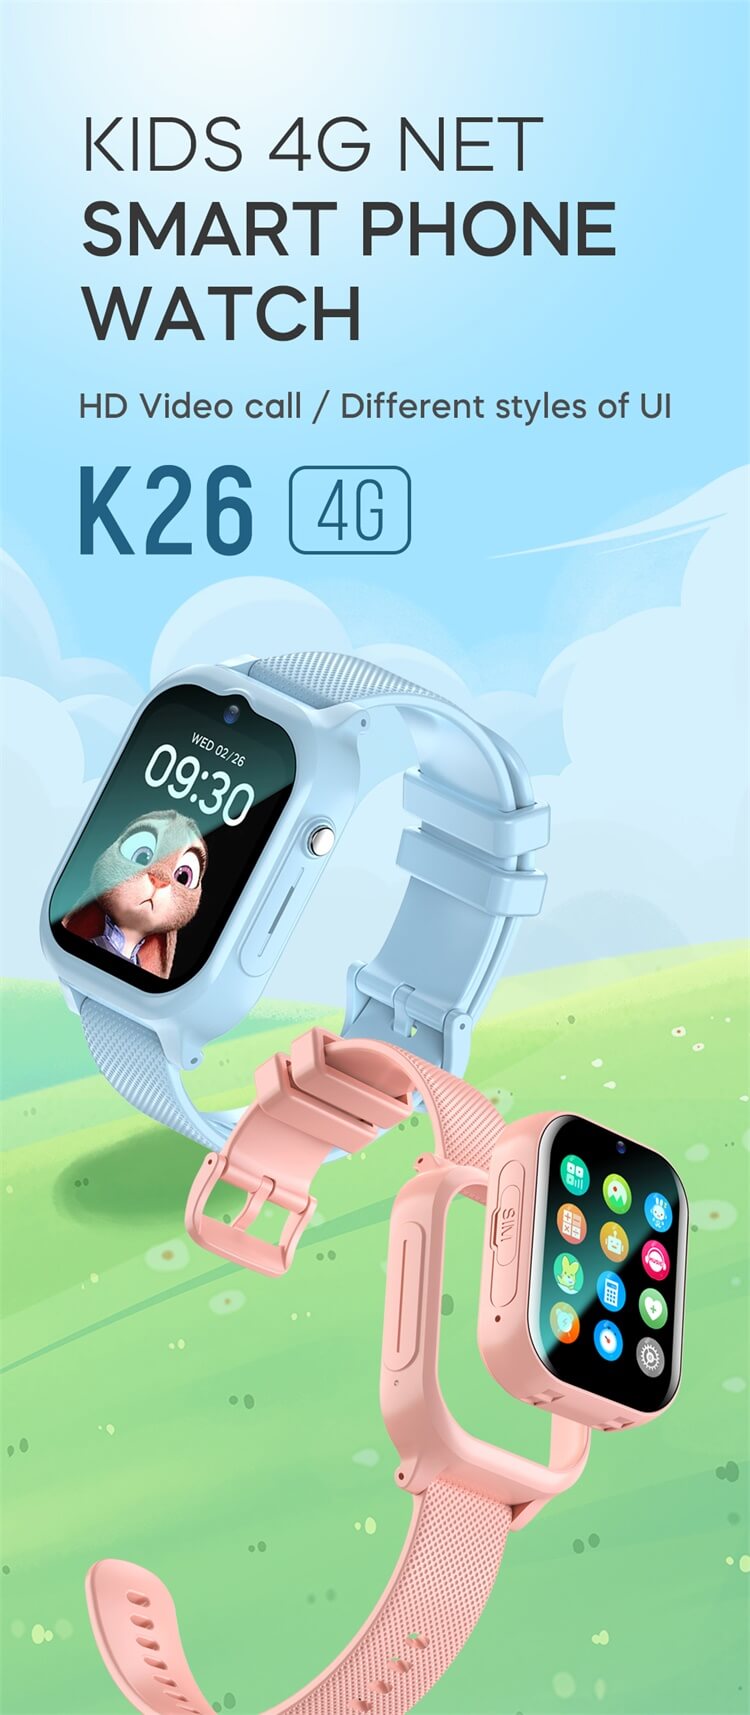 Reloj inteligente K26 para niños 4G Netcom HD Viedo Call Kid's Safeguard+ Batería de larga duración-Shenzhen Shengye Technology Co.,Ltd